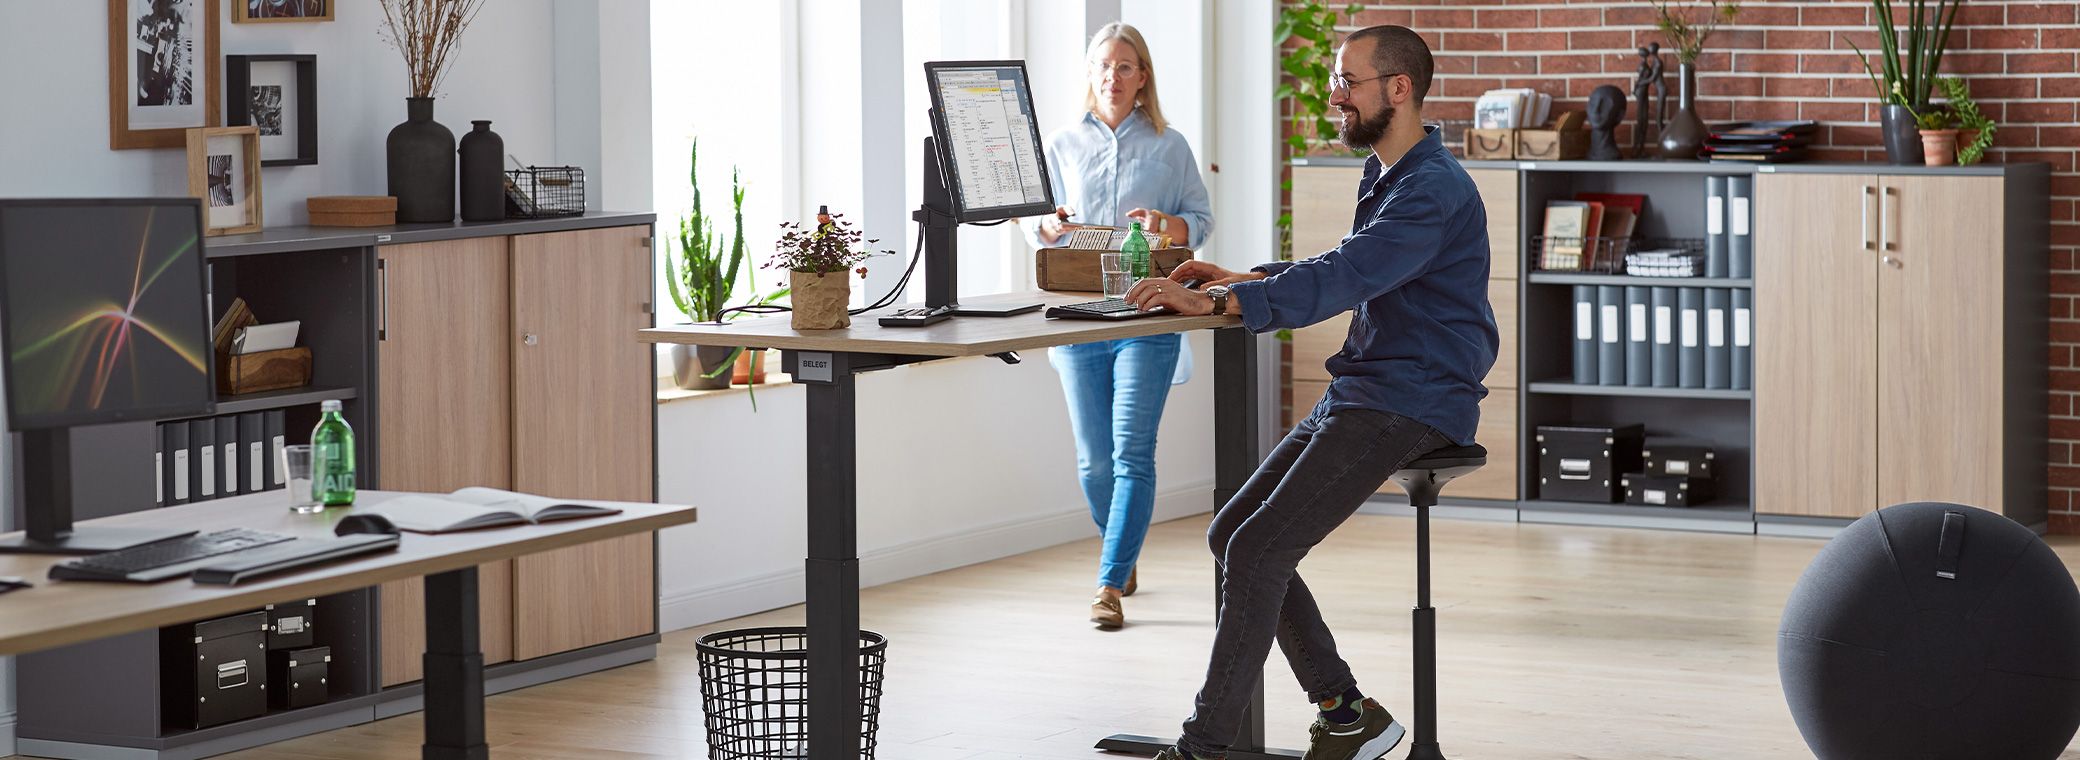 Twee collega's werken samen in het kantoor met ergonomisch meubilair